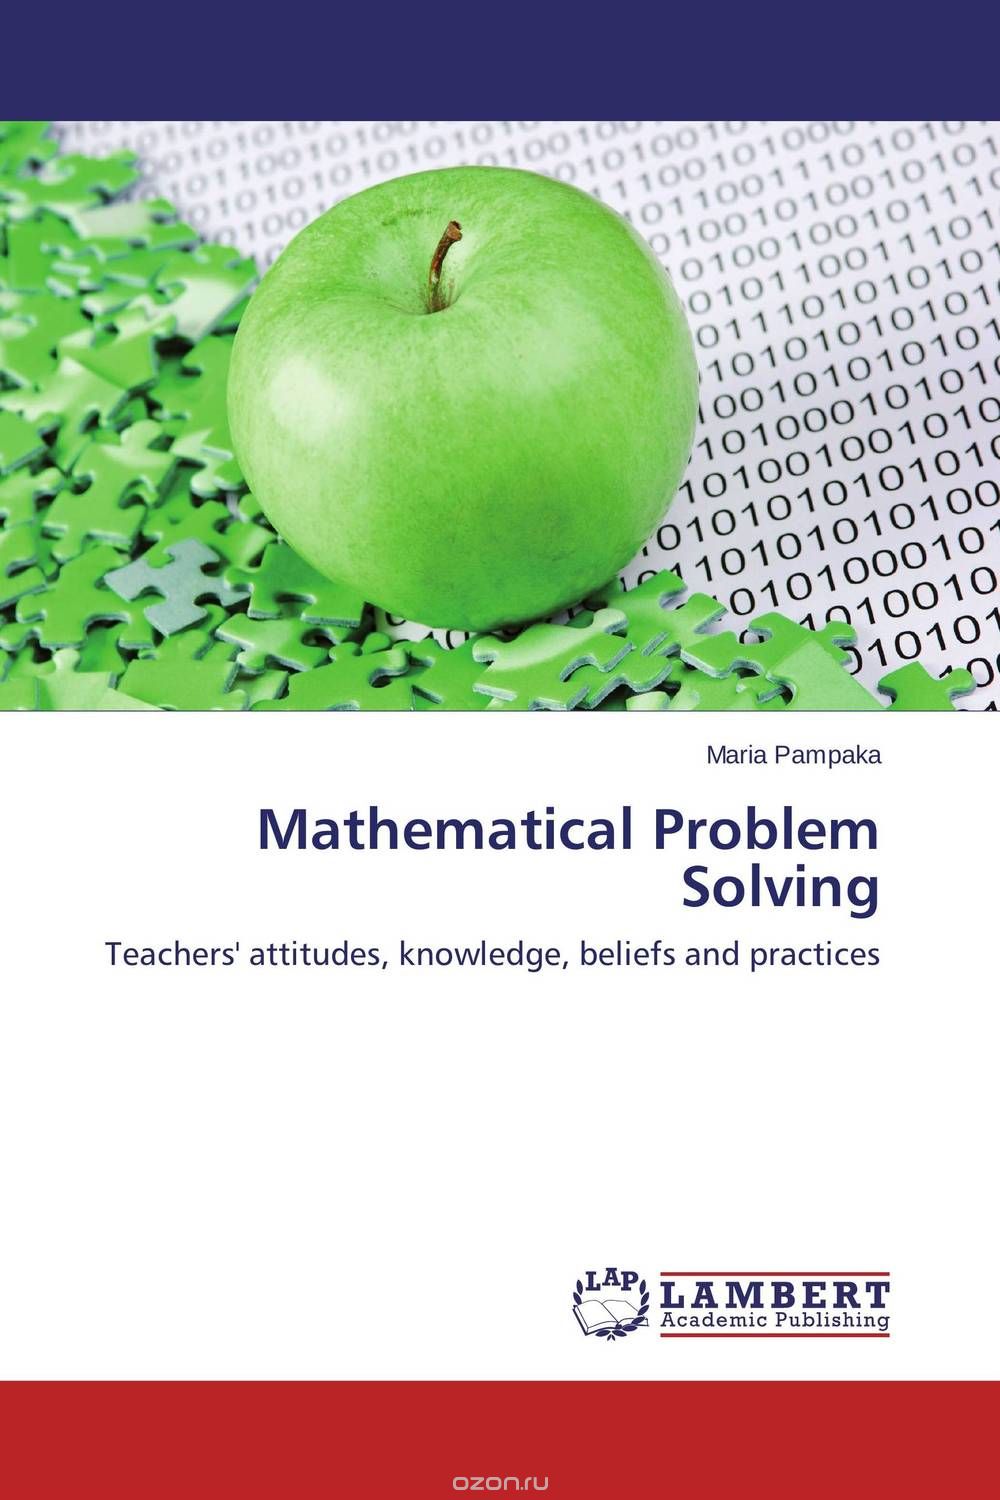 Скачать книгу "Mathematical Problem Solving"